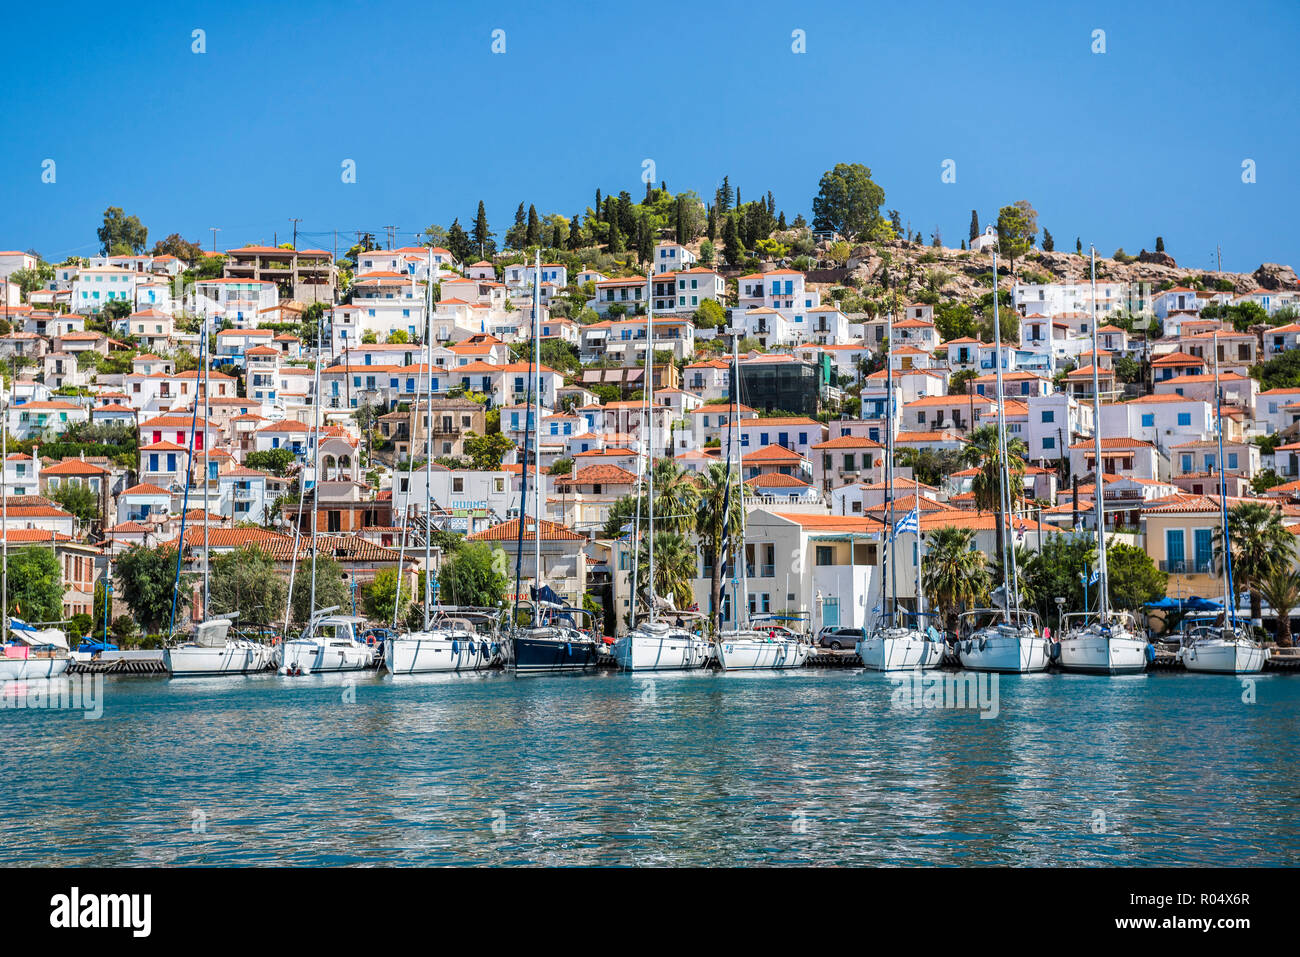 Voiliers dans le port de l'île de Poros, l'île du golfe Saronique, côte de la mer Egée, les îles grecques, Grèce, Europe Banque D'Images